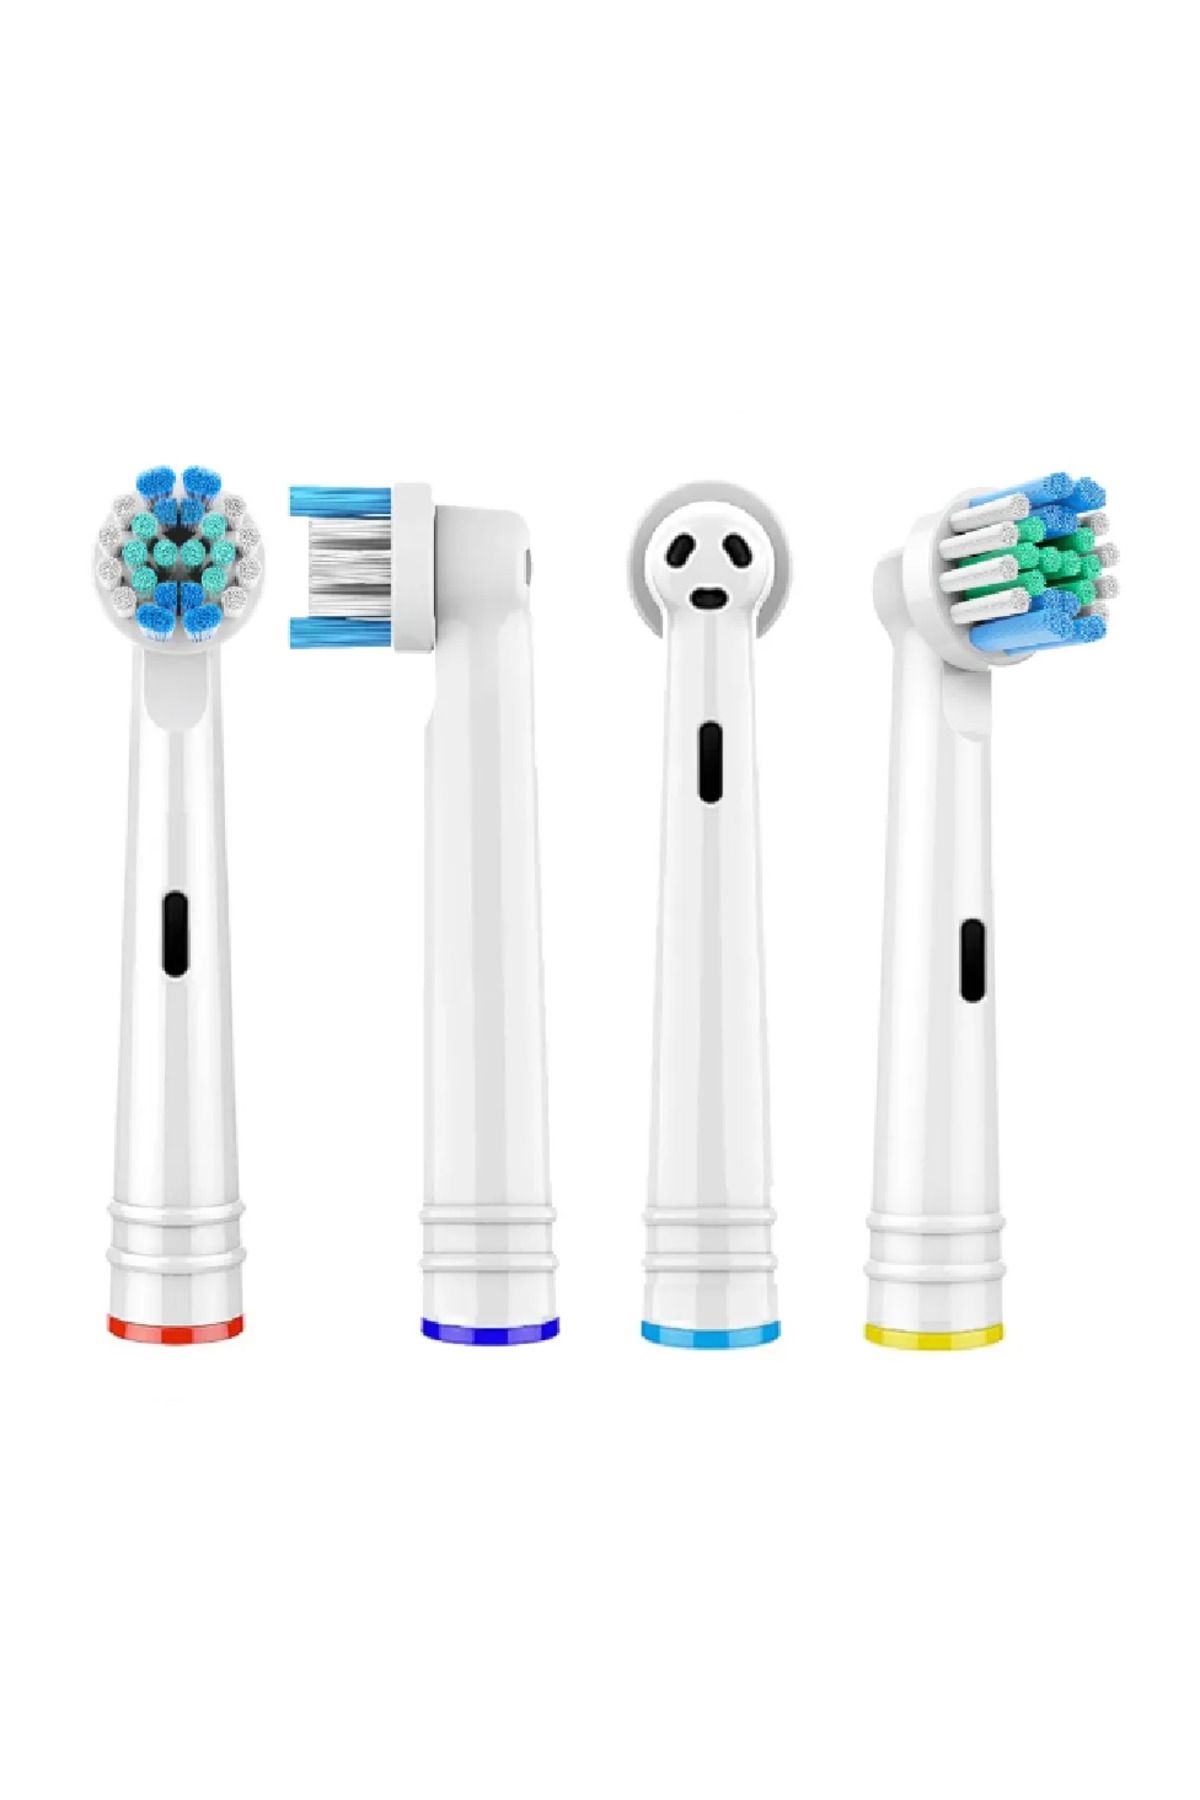 Toocare Oral B Uyumlu Diş Fırçası Yedek Başlığı 4 Adet Set - Standart Model - Özel Seri